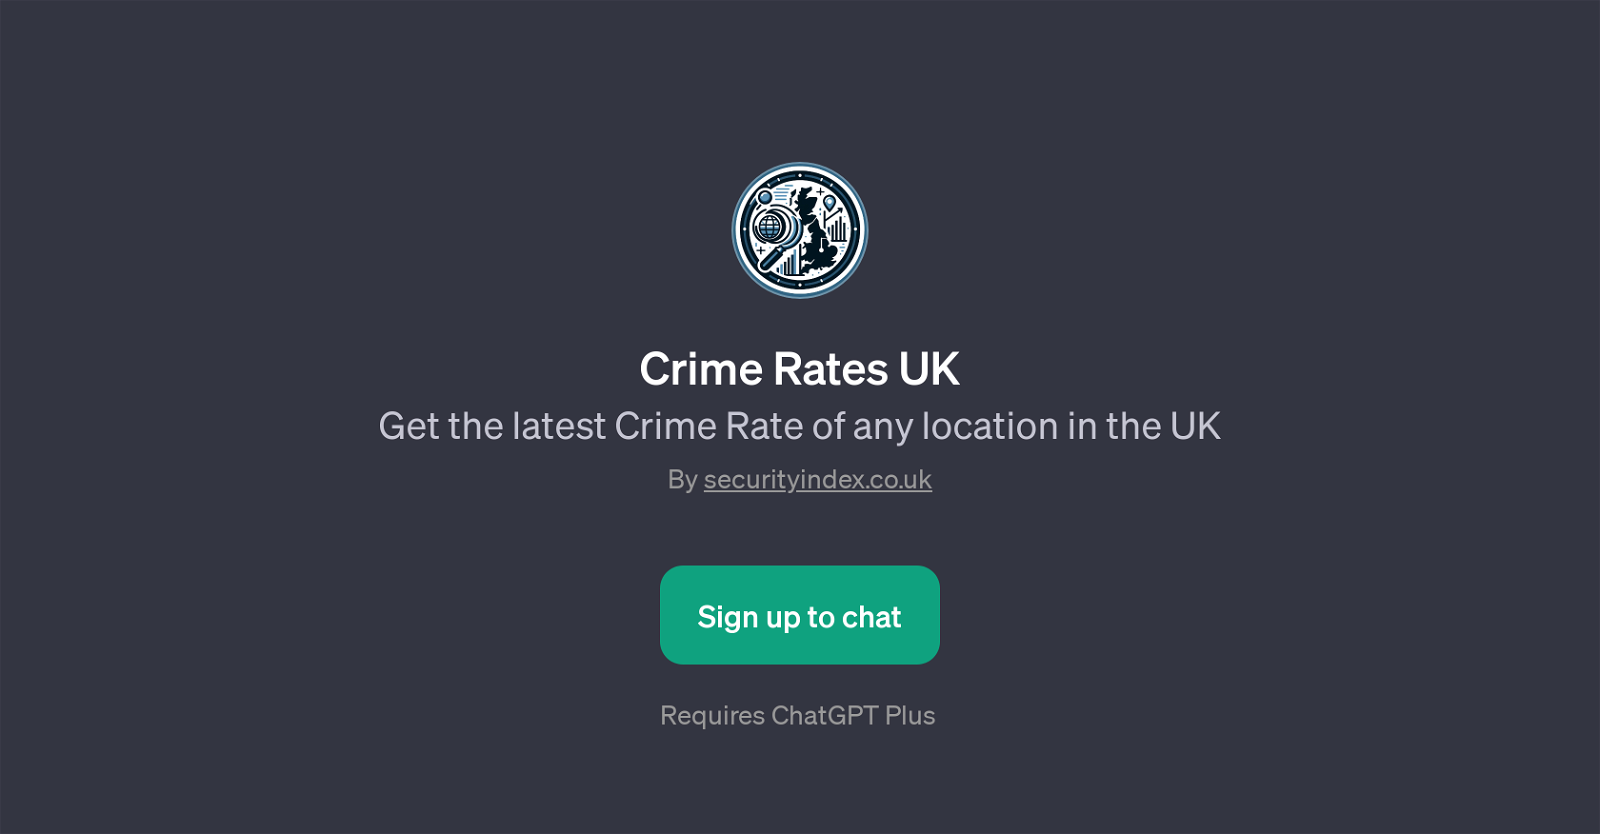 Crime Rates UK website